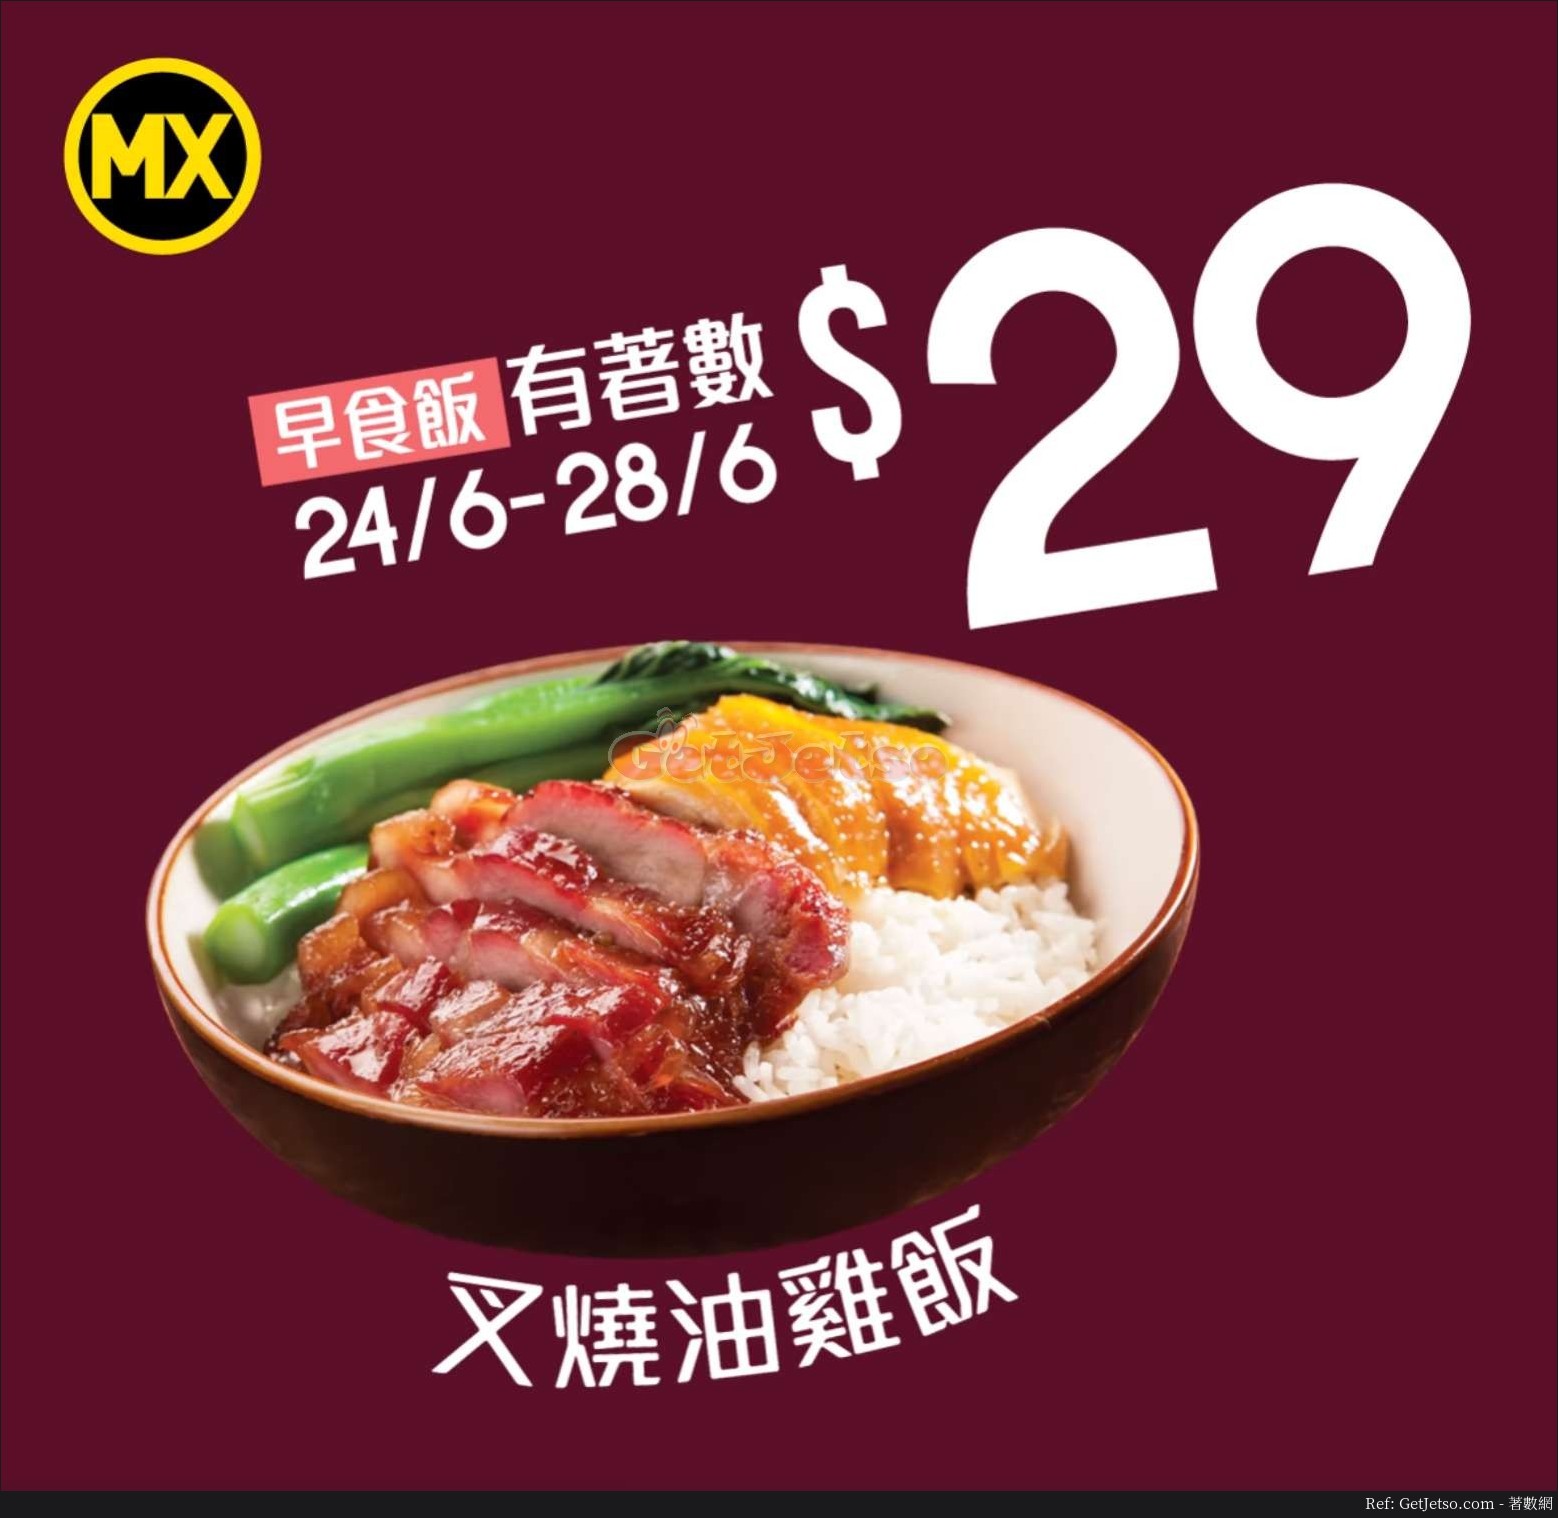 美心MX 叉燒油雞飯優惠(19年6月24-28日)圖片1